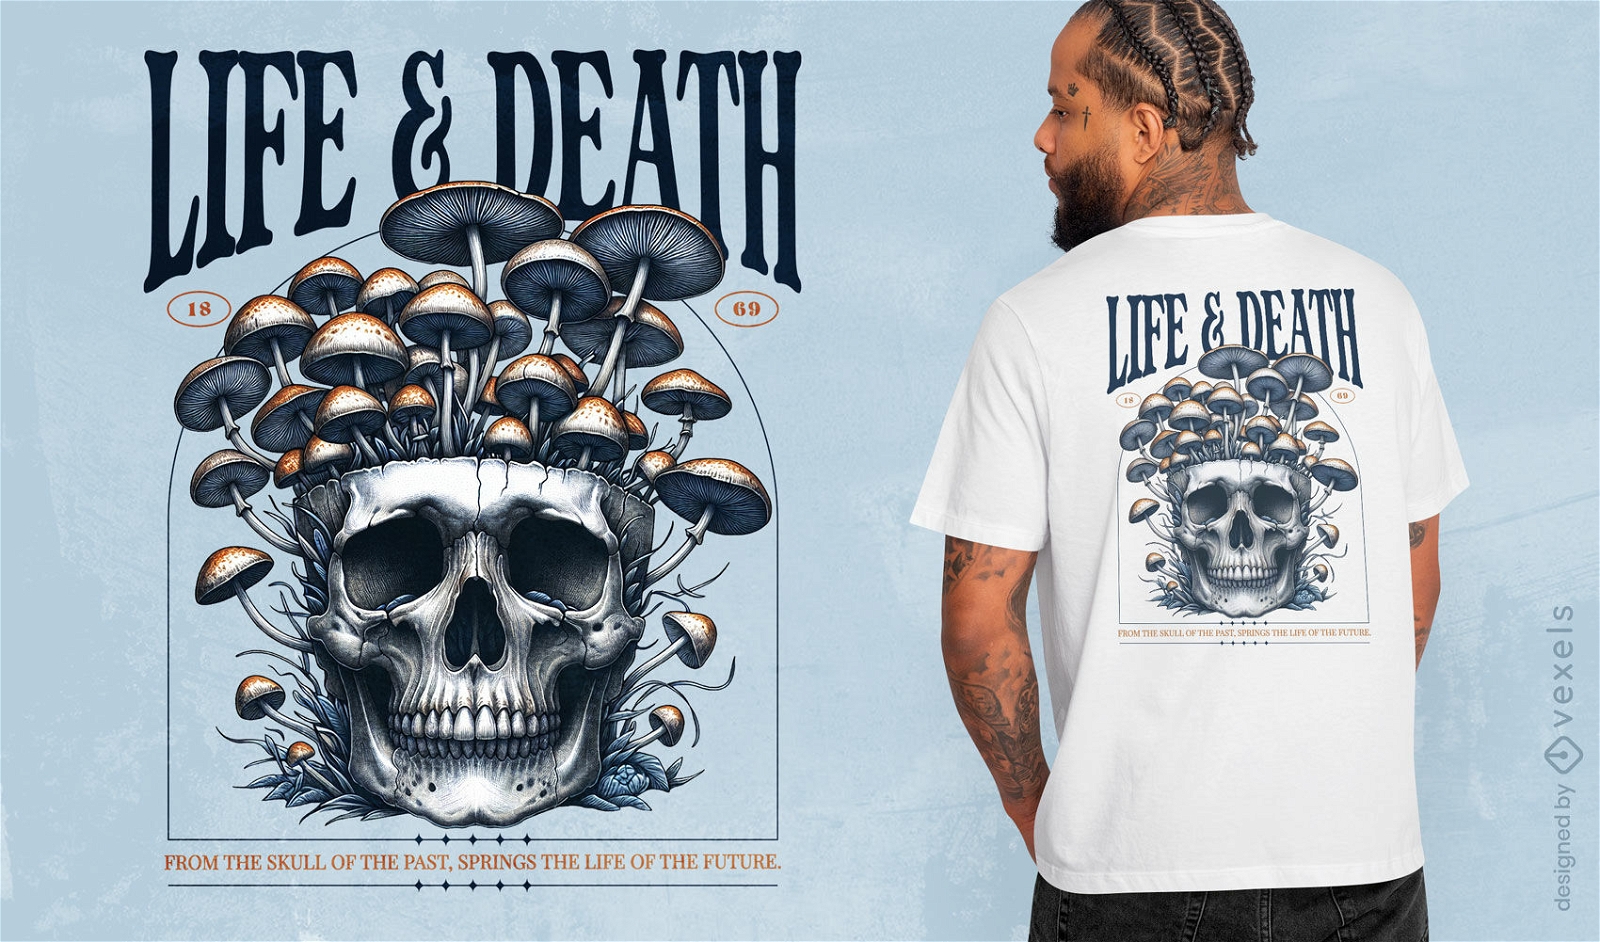 Mushroom and skull t-shirt design